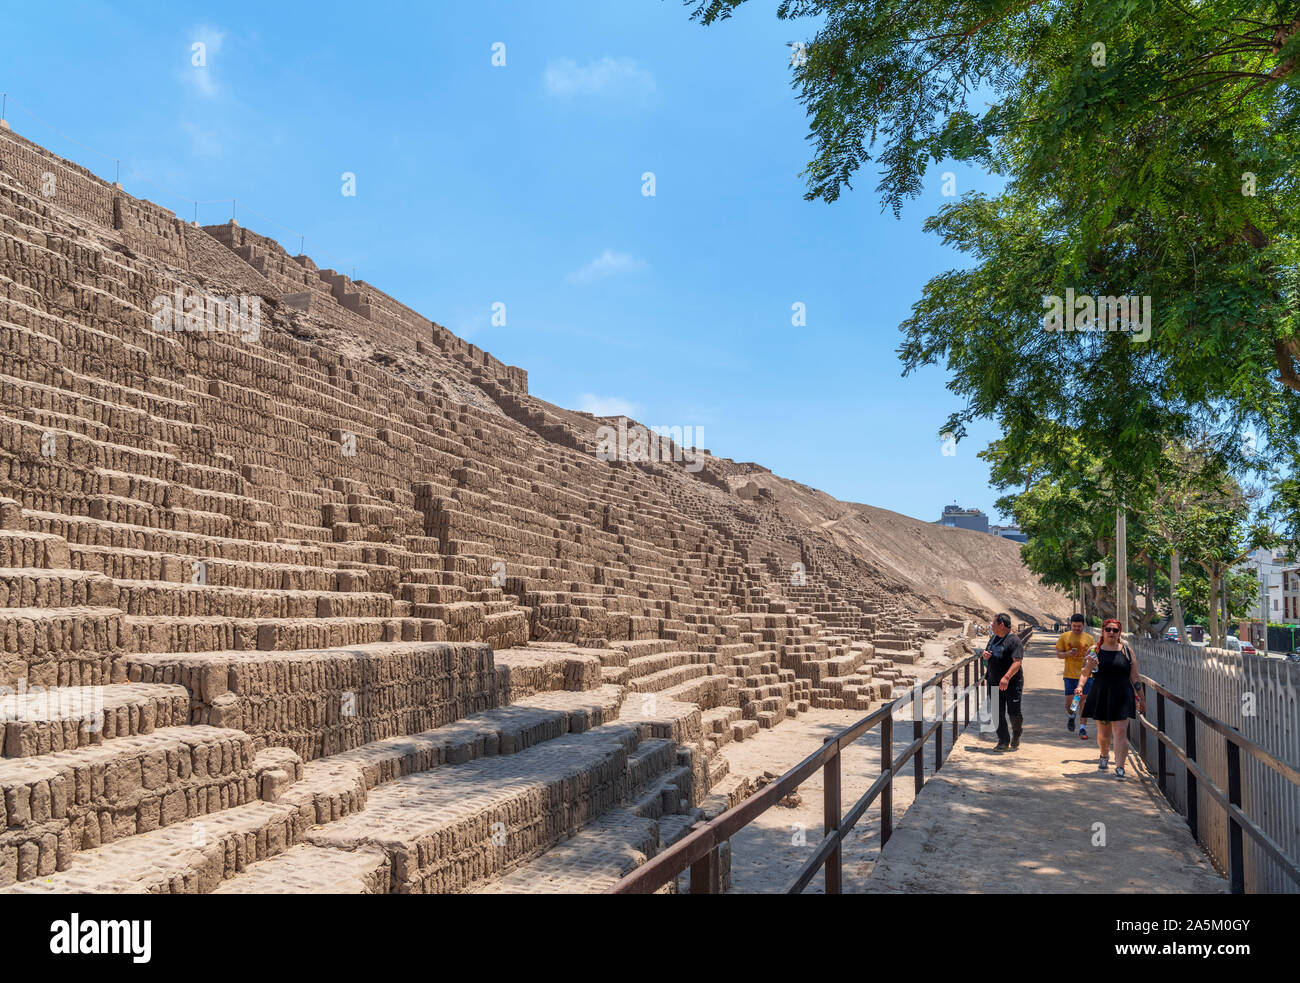 Touristen neben der Großen Pyramide, aus der Zeit um 400 N.CHR., Huaca Pucllana, Miraflores, Lima, Peru, Südamerika Stockfoto